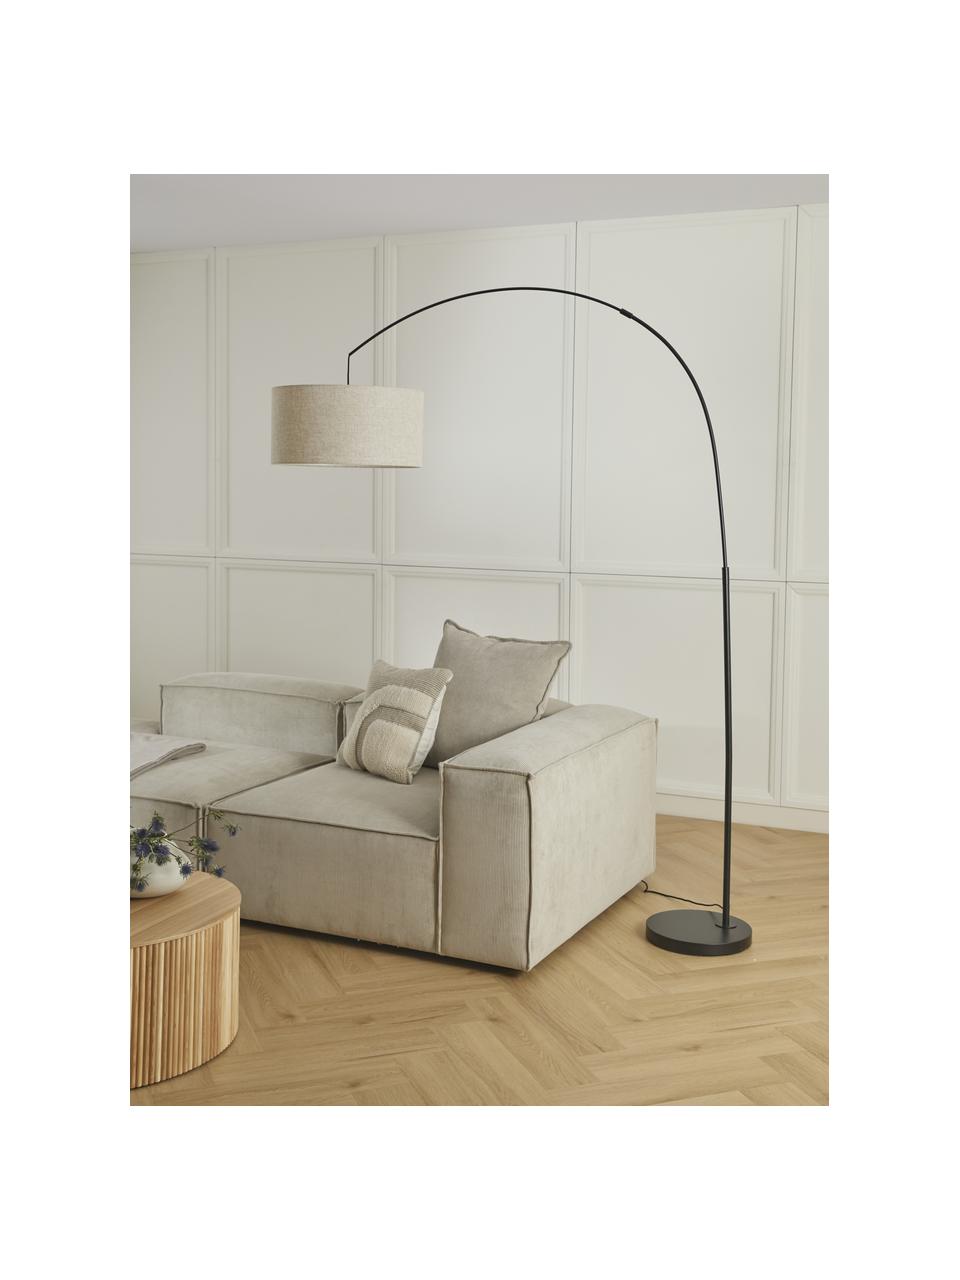 Lámpara arco grande Niels, Pantalla: lino, Cable: cubierto en tela, Negro, beige, Ø 50 x Al 218 cm